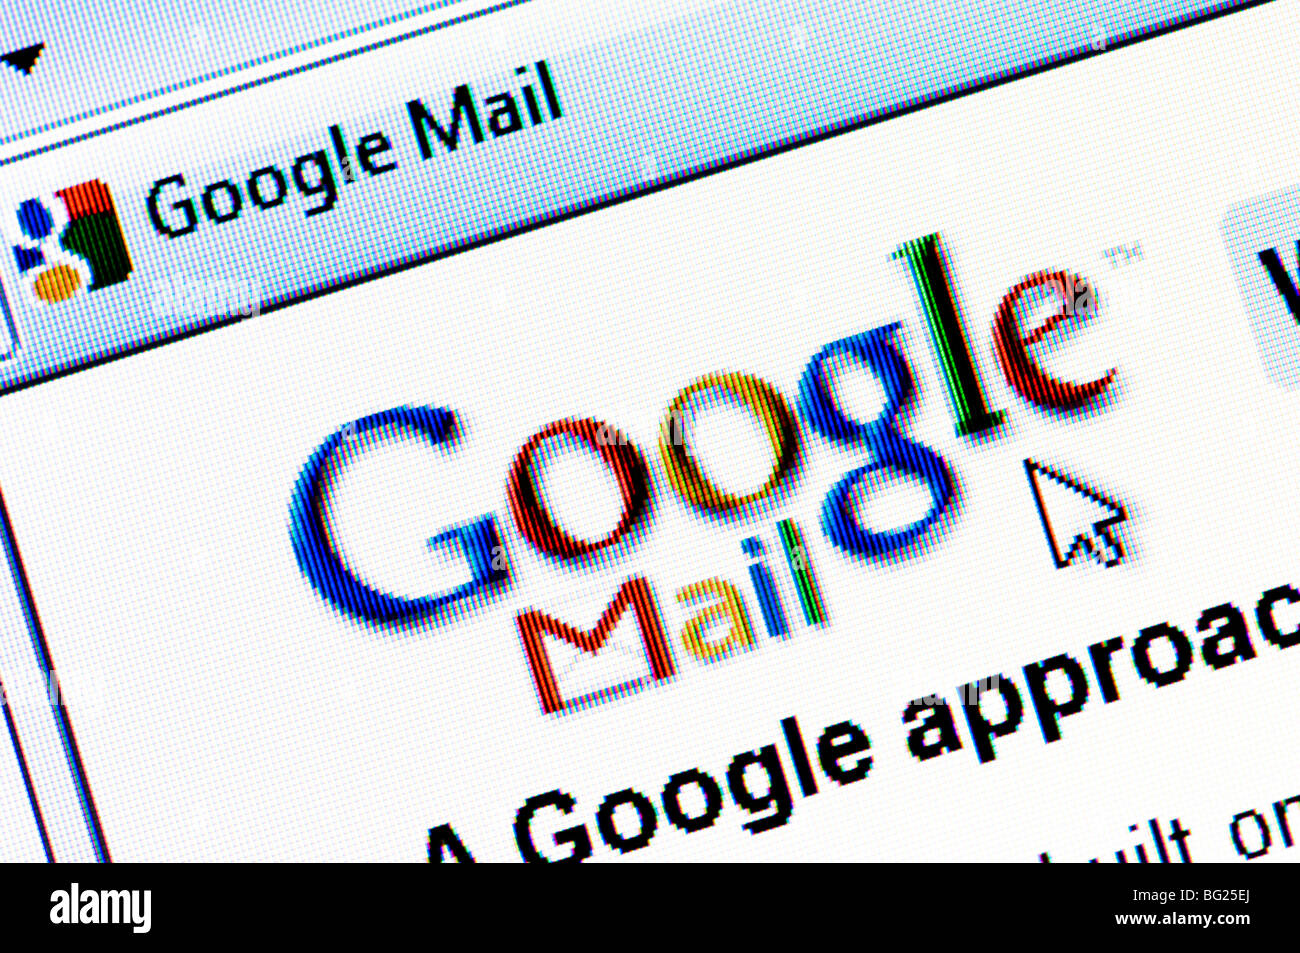 Capture d'écran du site web de Google Mail (Gmail) aka - le service de courriel gratuit géré par géant de l'internet Google. Usage éditorial uniquement. Banque D'Images